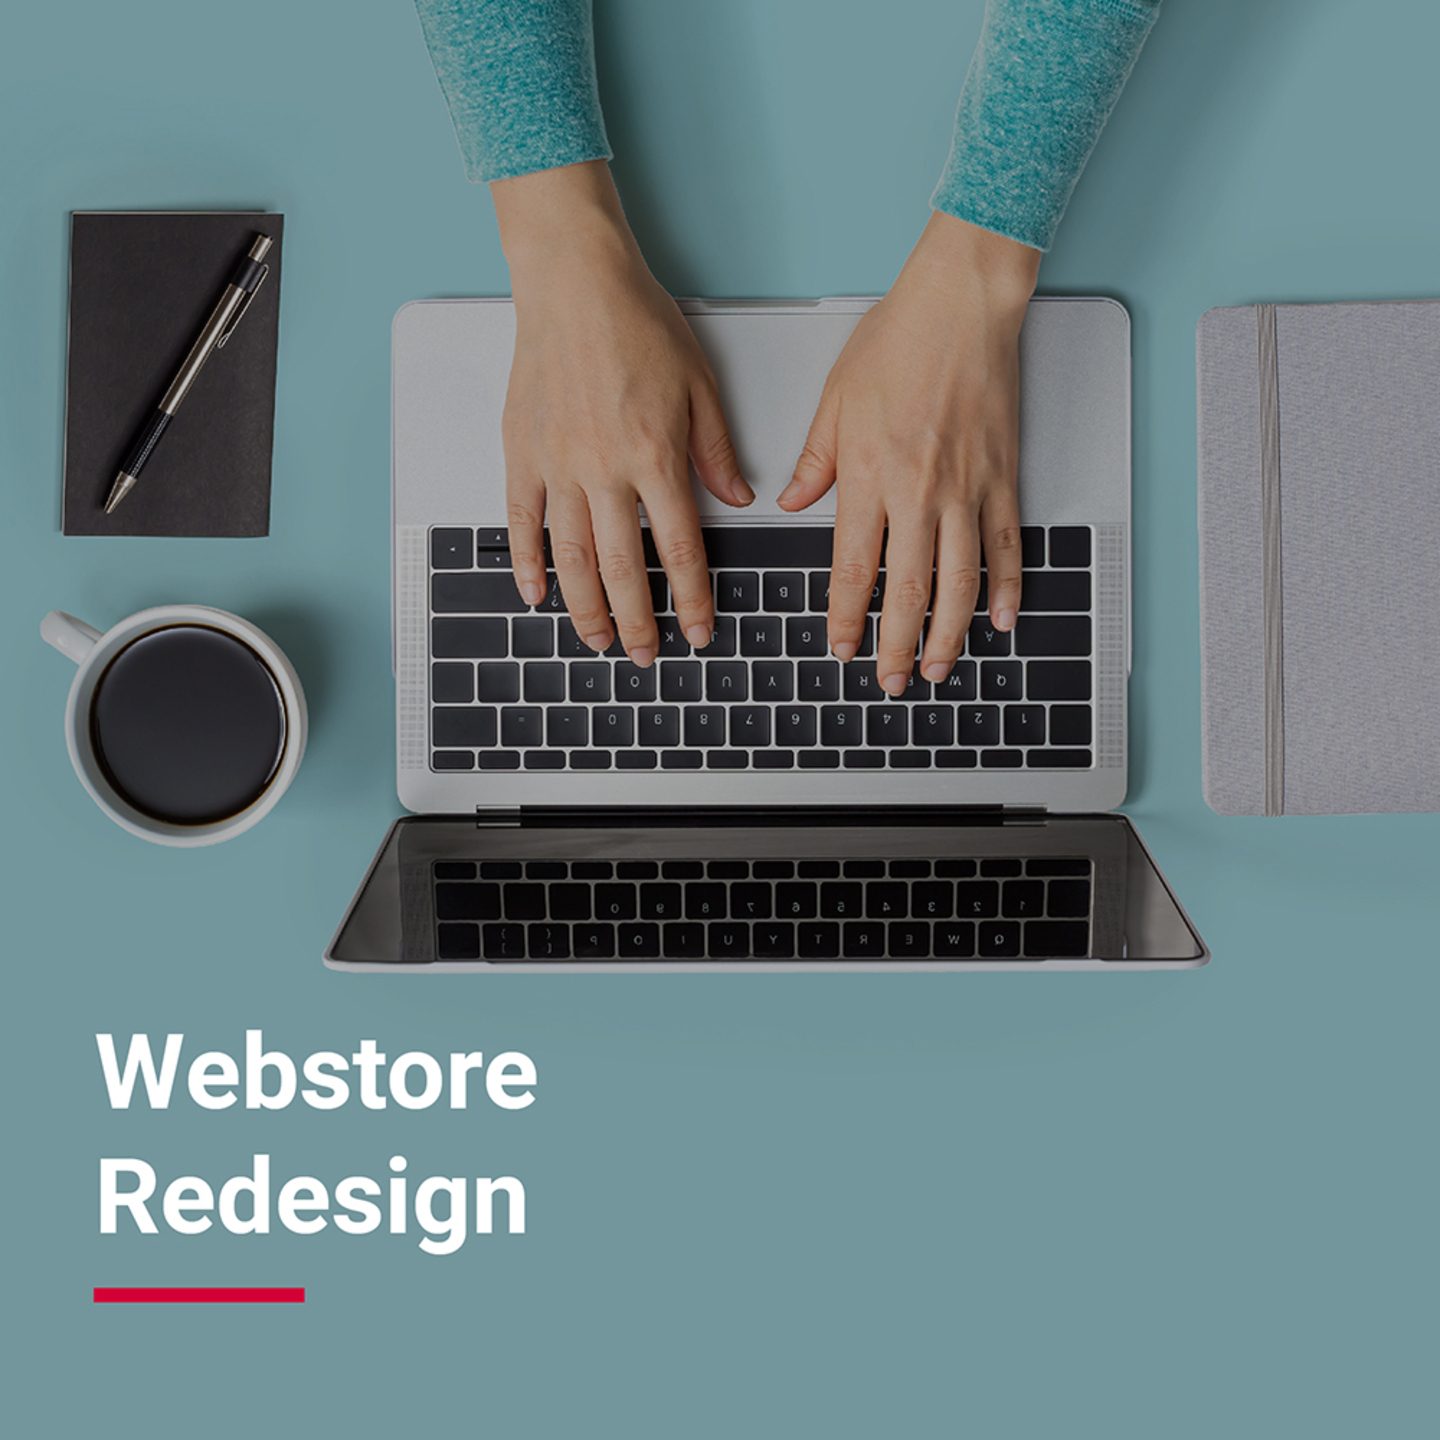 Webstore Redesign